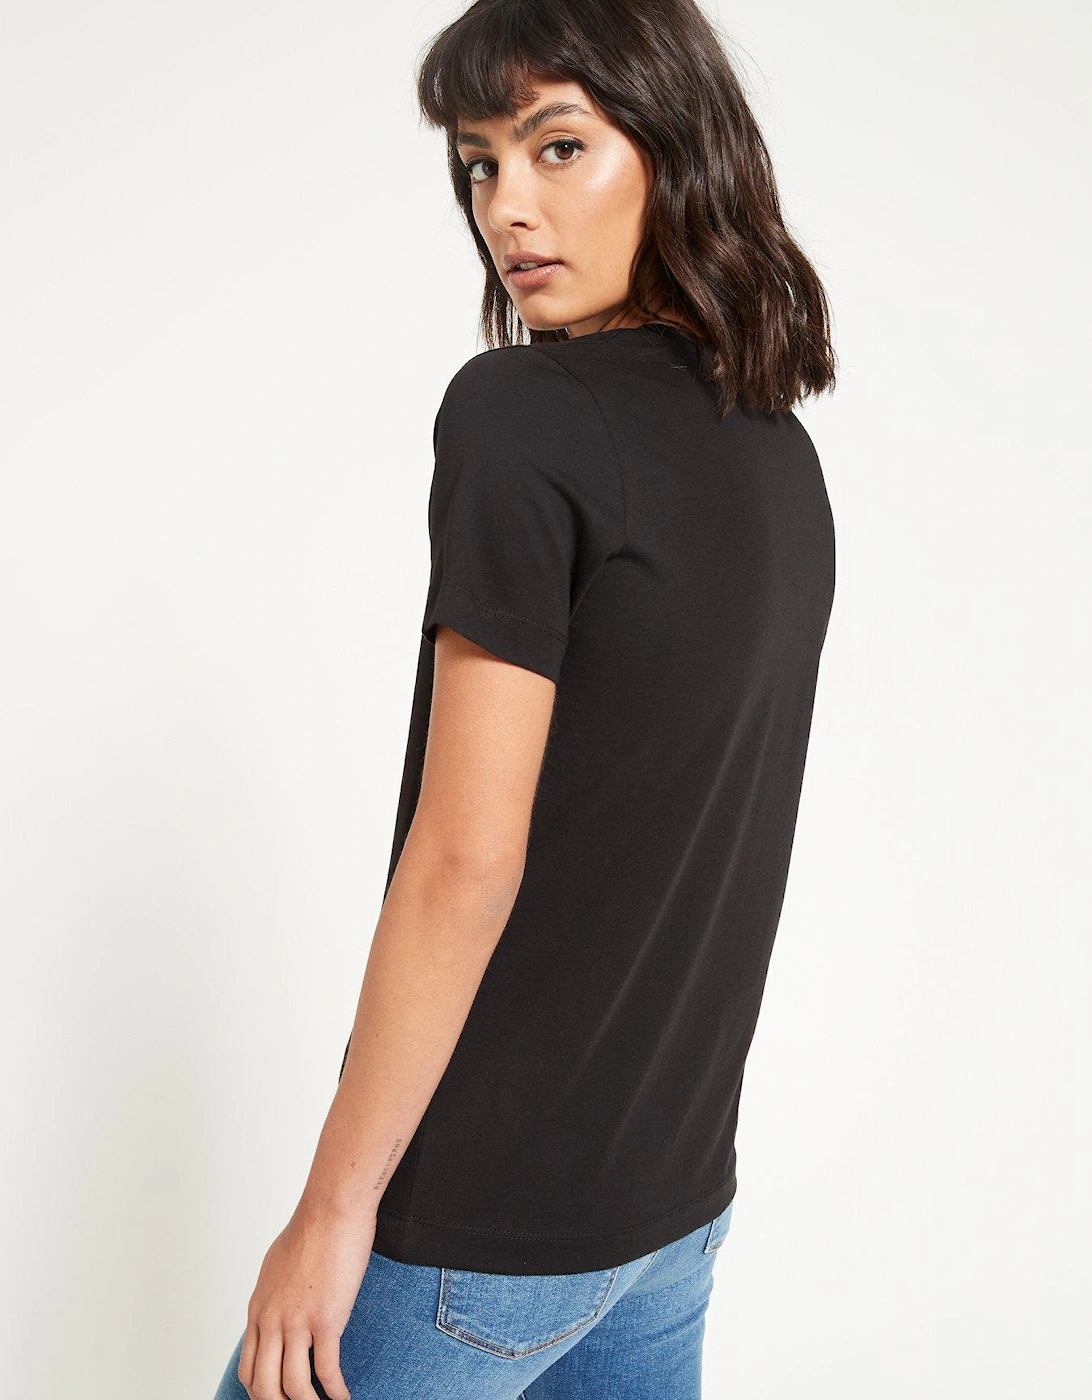 The Essential V Neck T-Shirt - Black